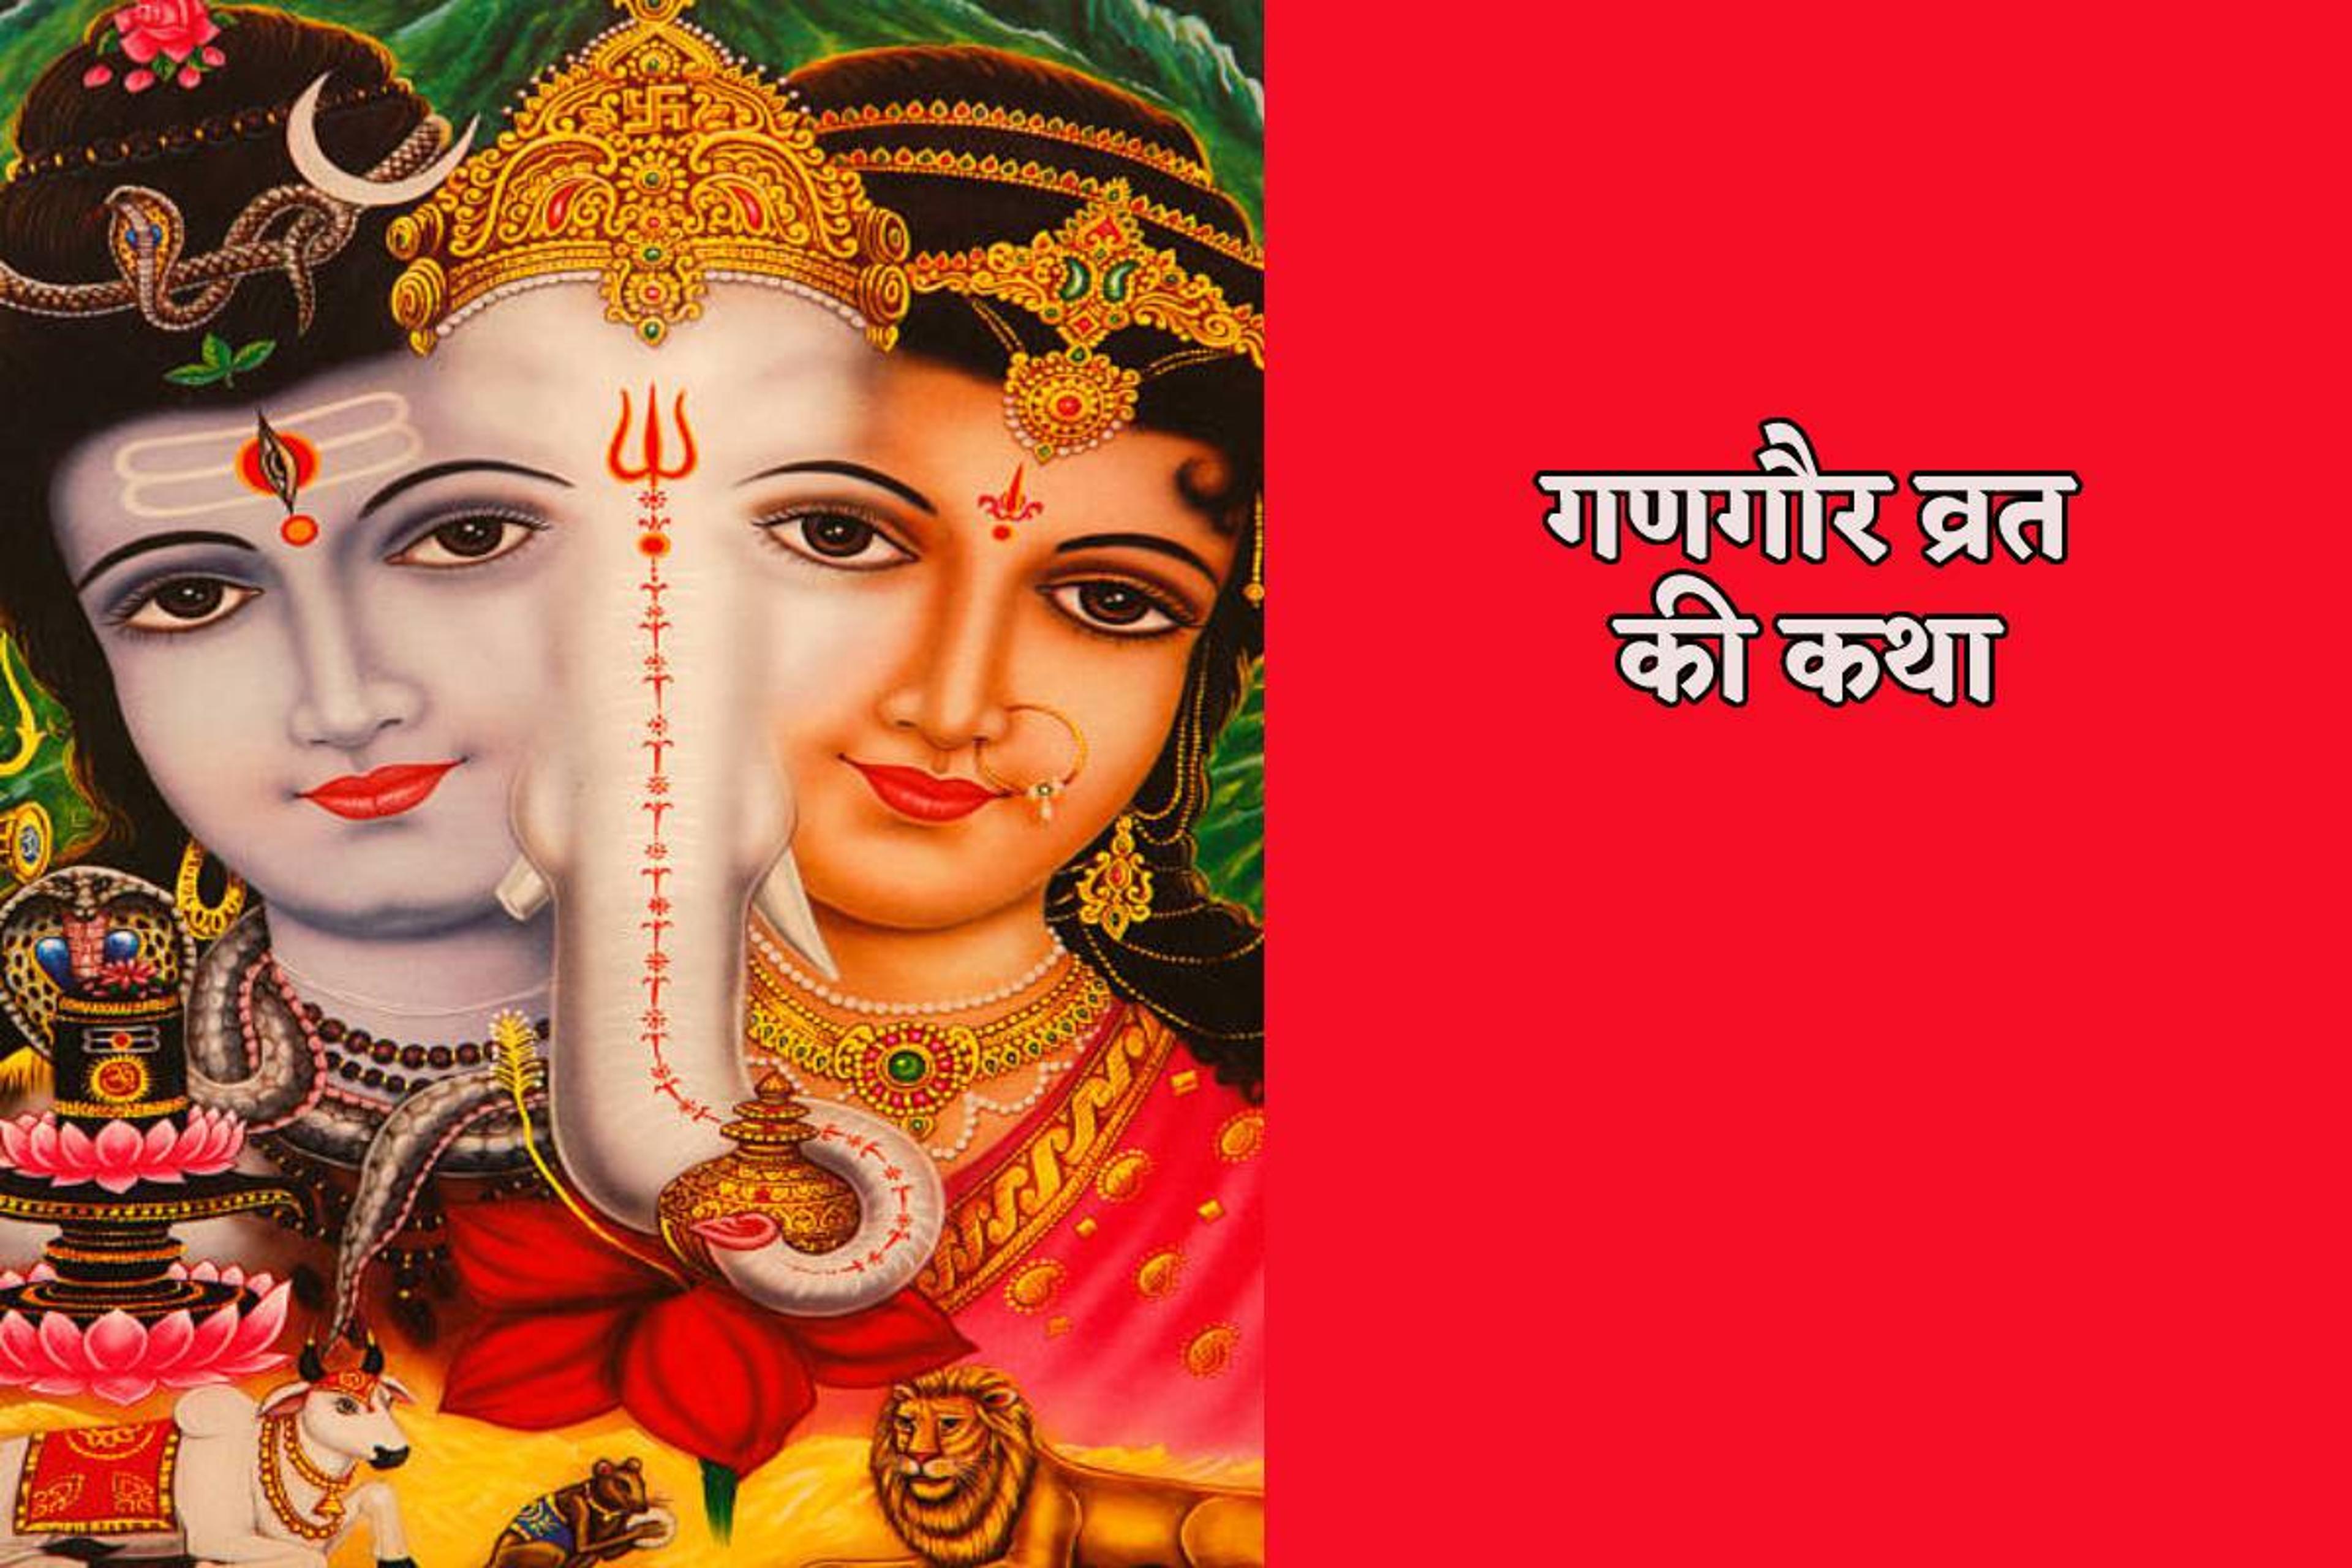 Gangaur Katha: महिलाएं क्यों छिपाती हैं गणगौर पूजा, कथा से जानिए भगवान शिव की
गुप्त पूजा का रहस्य